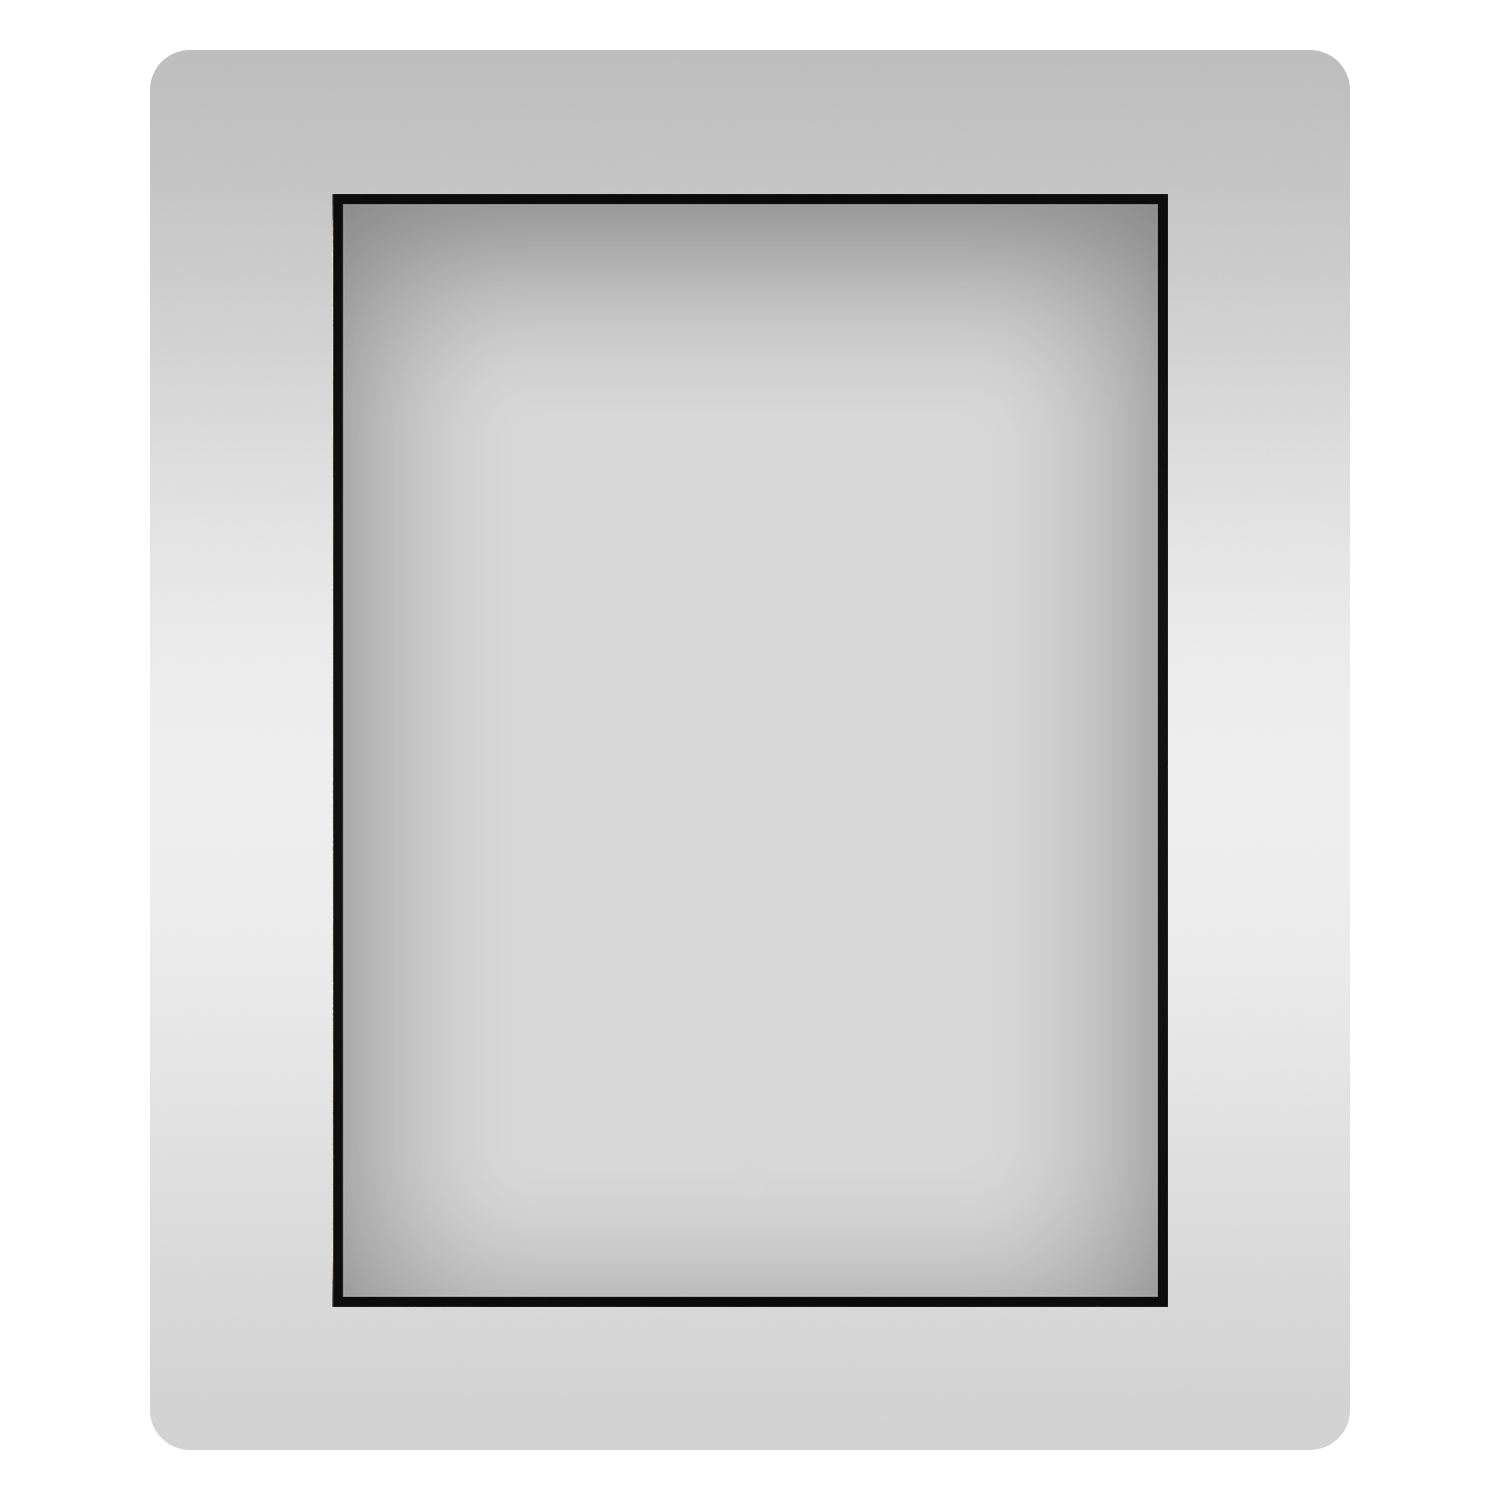 Влагостойкое прямоугольное зеркало Wellsee 7 Rays' Spectrum 172200560, 50х75 см